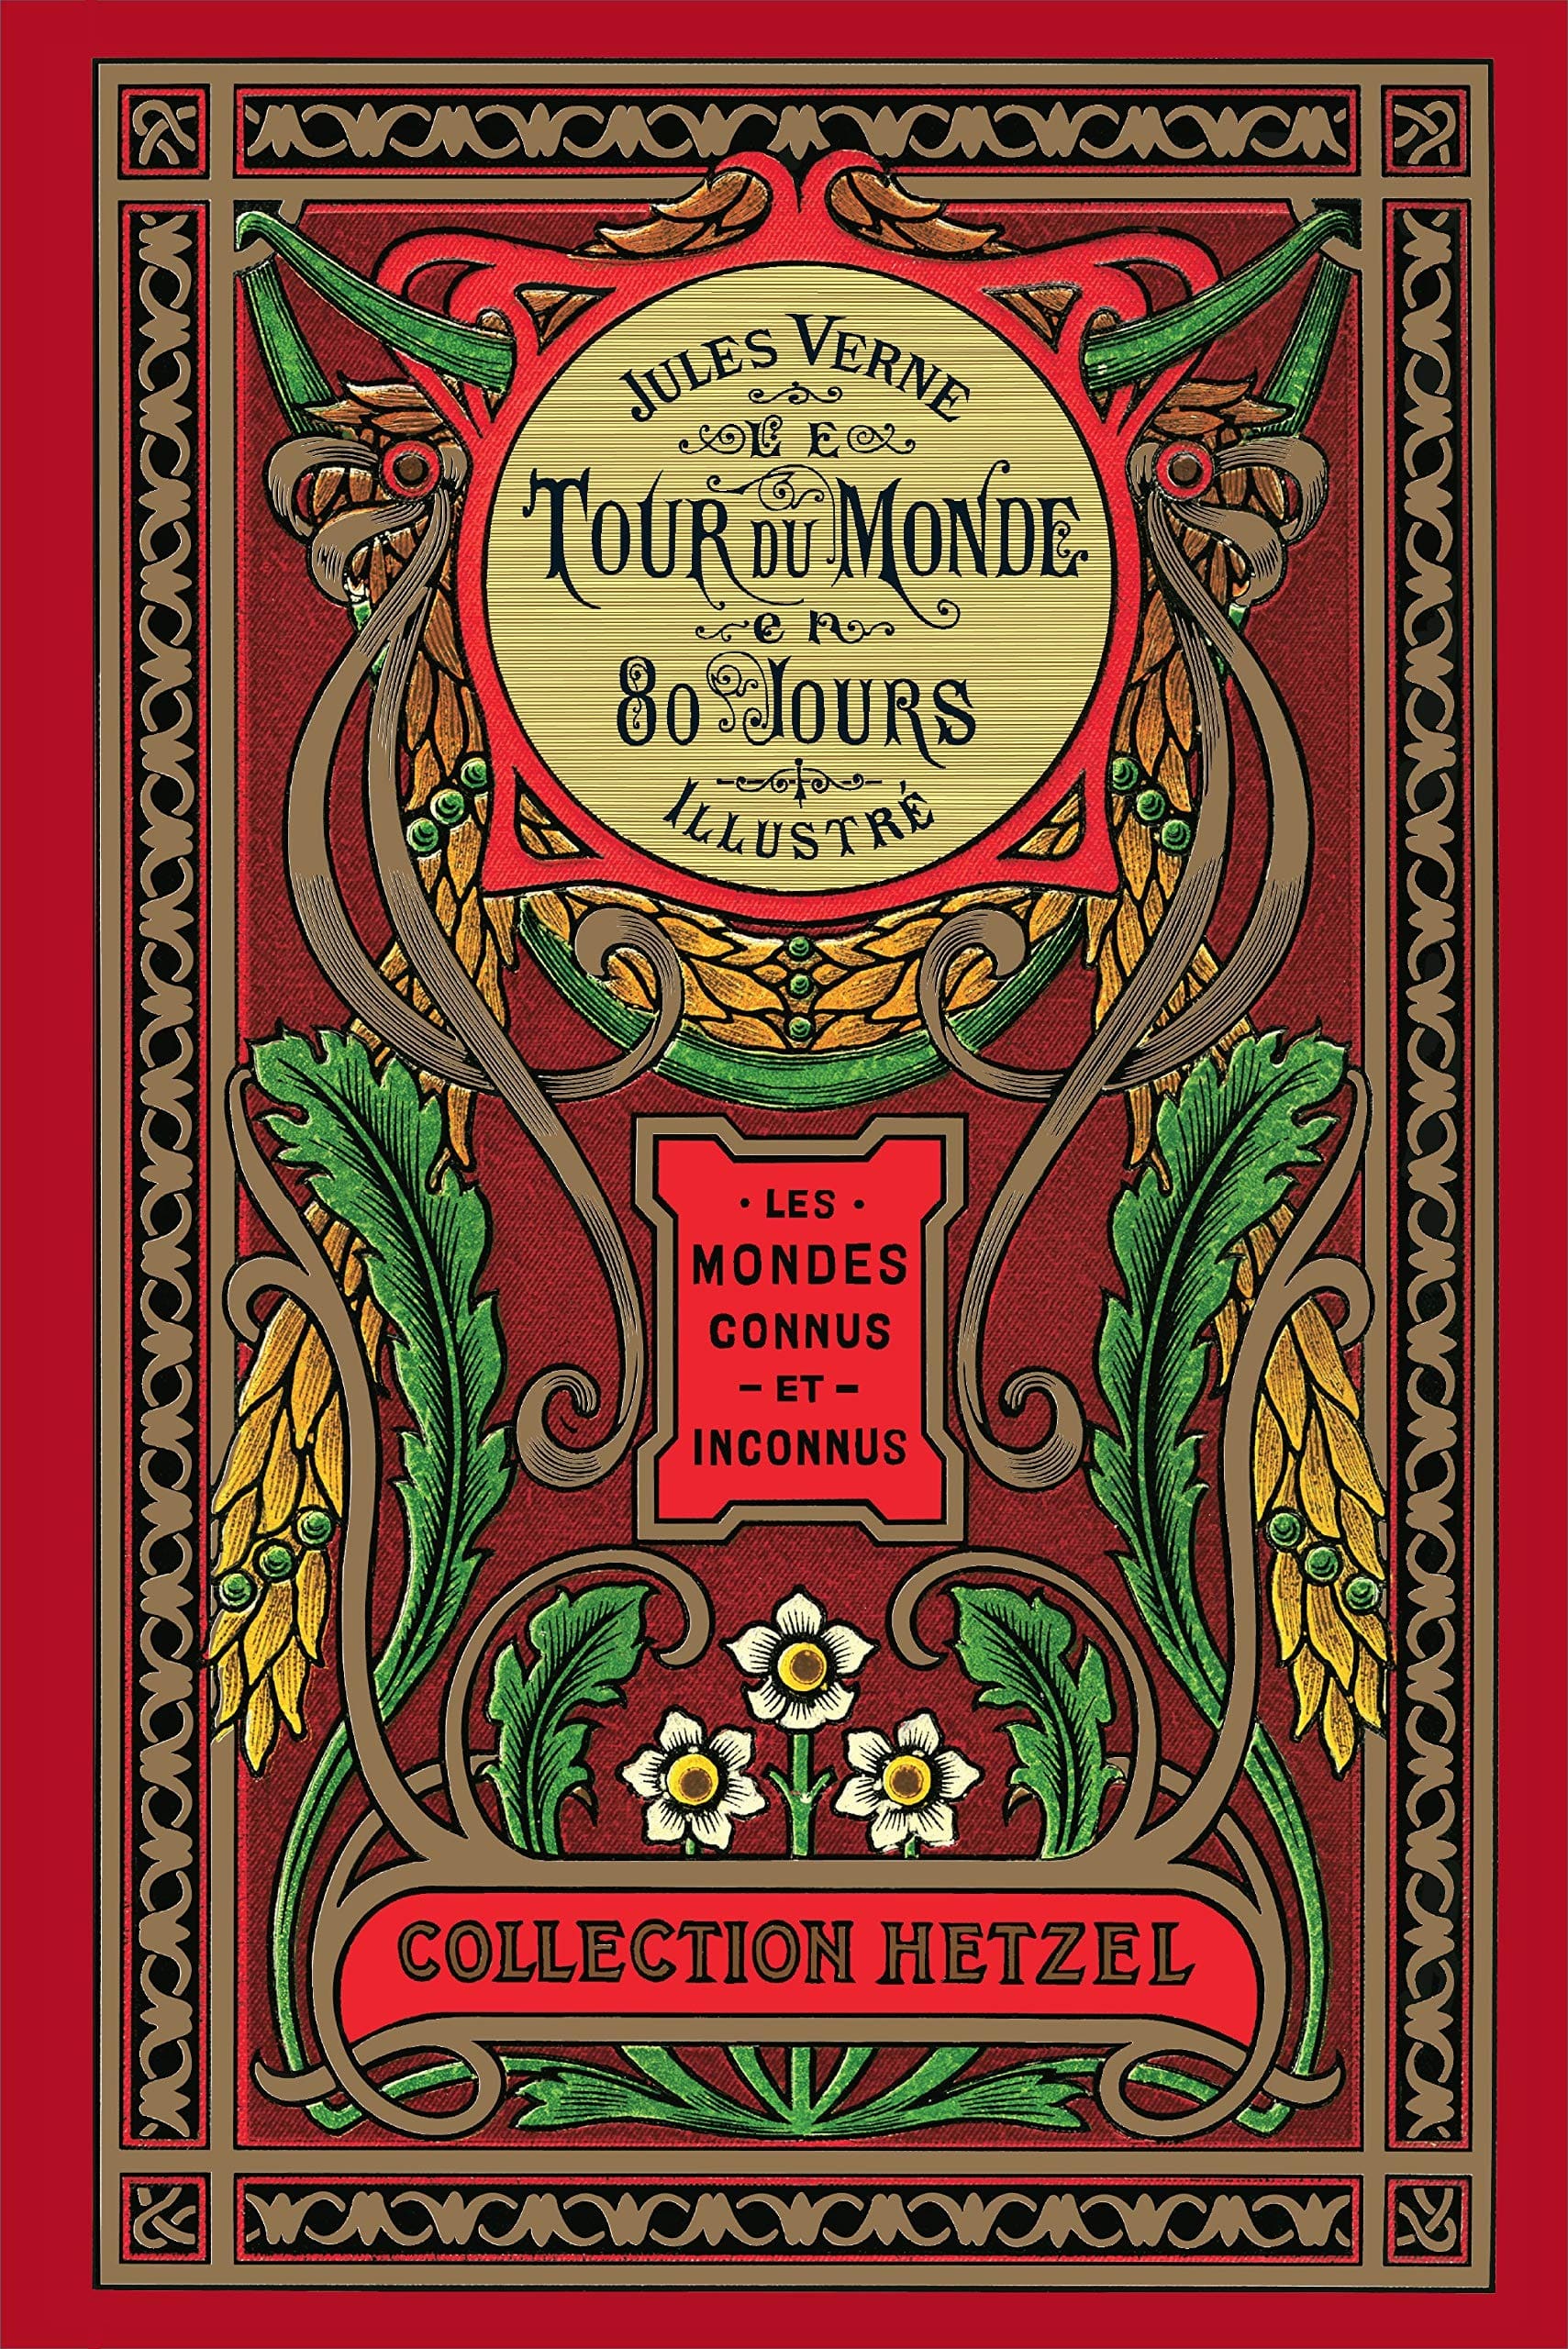 Le tour du monde en 80 jours, de Jules Verne